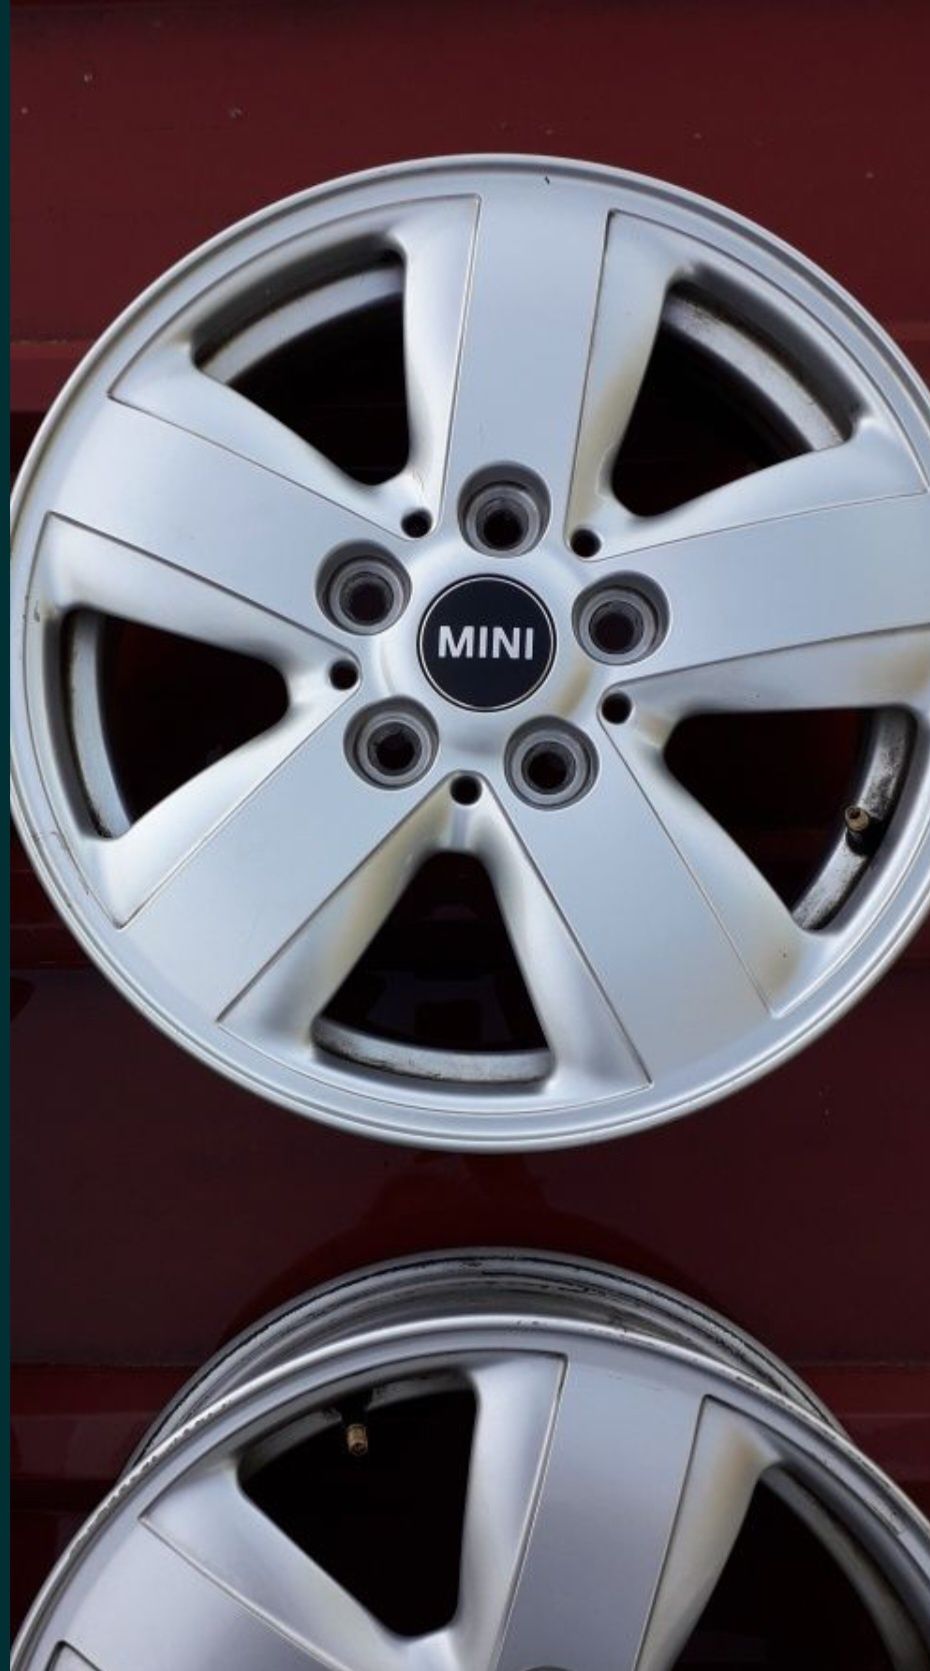 Vendo Jantes originais Mini 15"
Vendo pneus 175/65